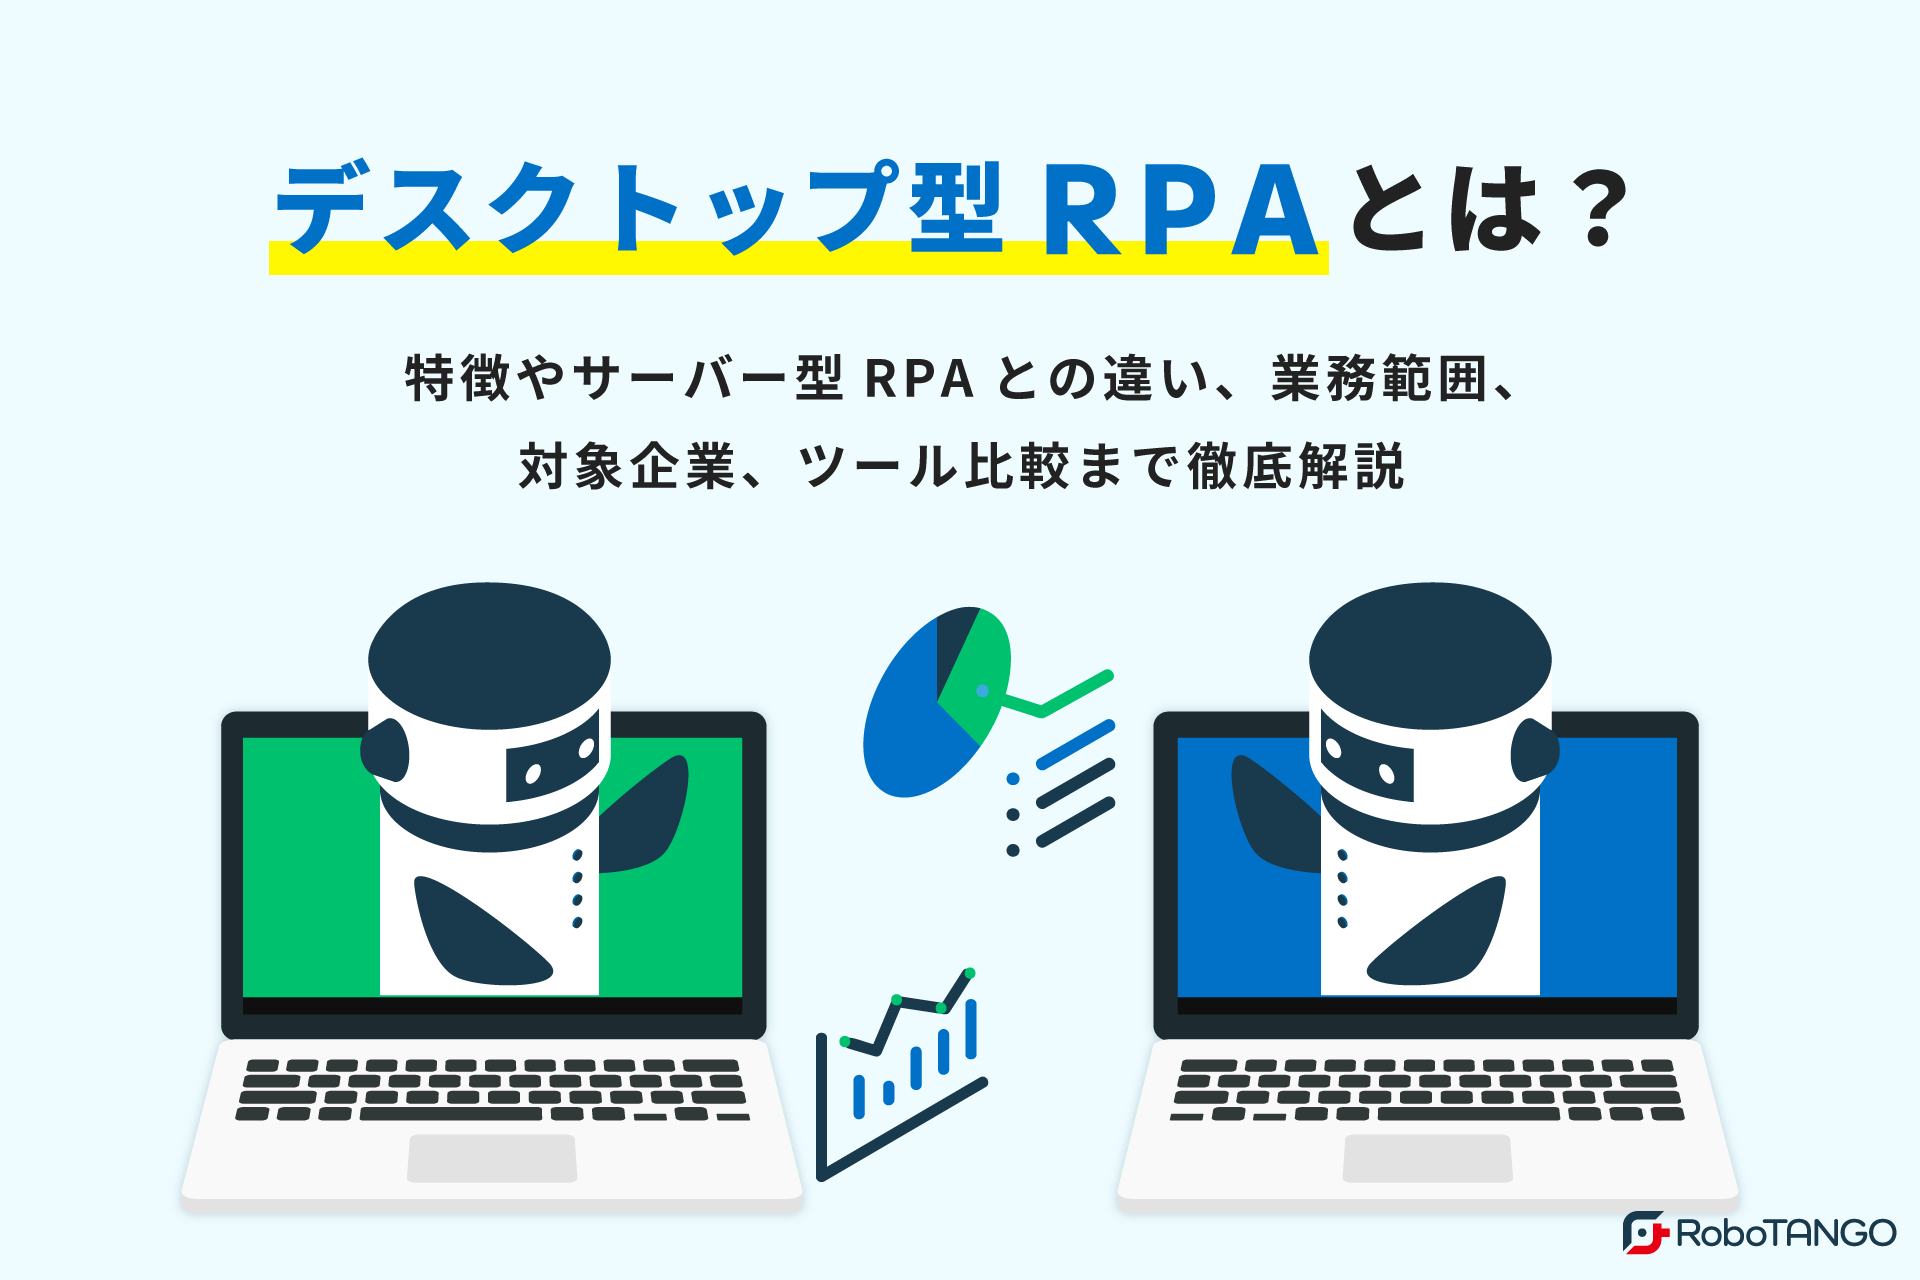 デスクトップRPAとは？特徴やサーバー型RPAとの違い、業務範囲や対象企業、ツールまで紹介します